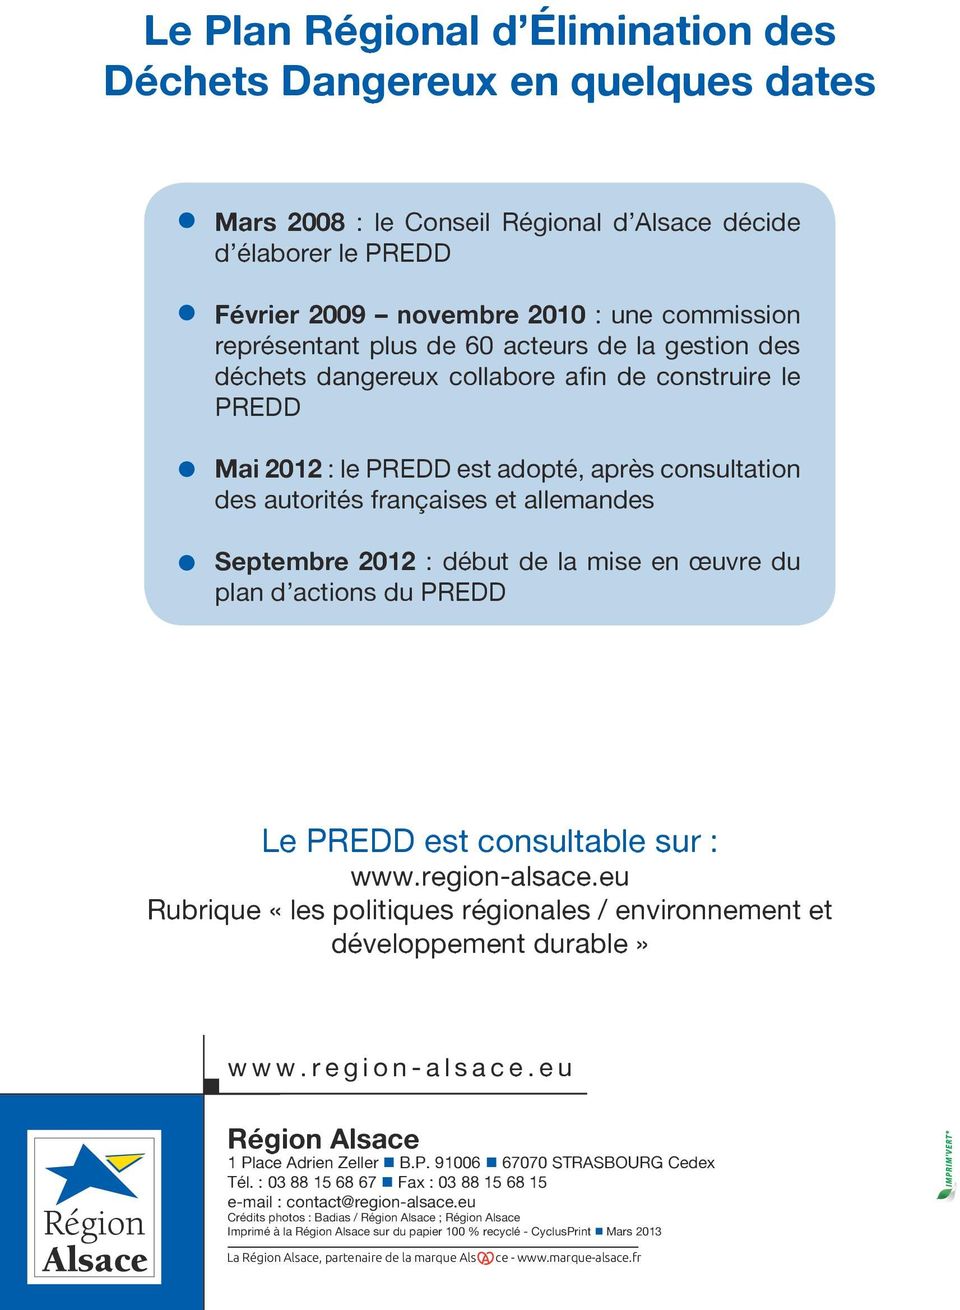 début de la mise en œuvre du plan d actions du PREDD Le PREDD est consultable sur : www.region-alsace.eu Rubrique «les politiques régionales / environnement et développement durable» www.